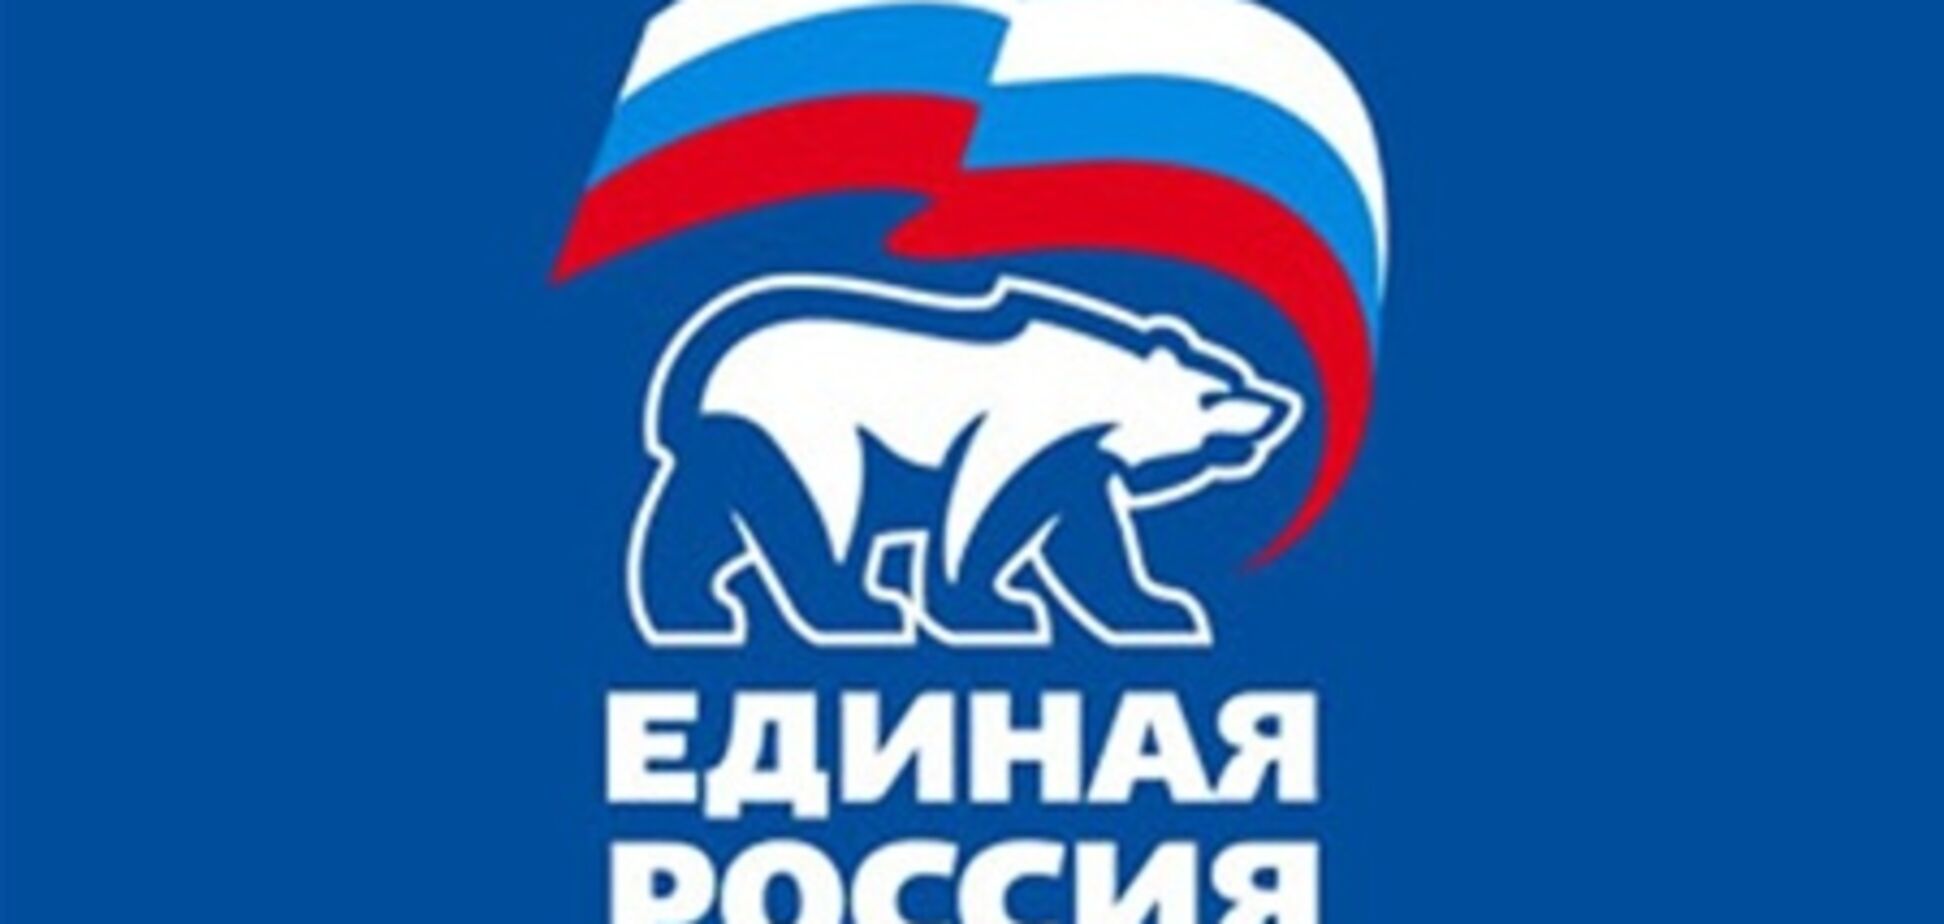 'Единой России' нужен конкурент - Сурков